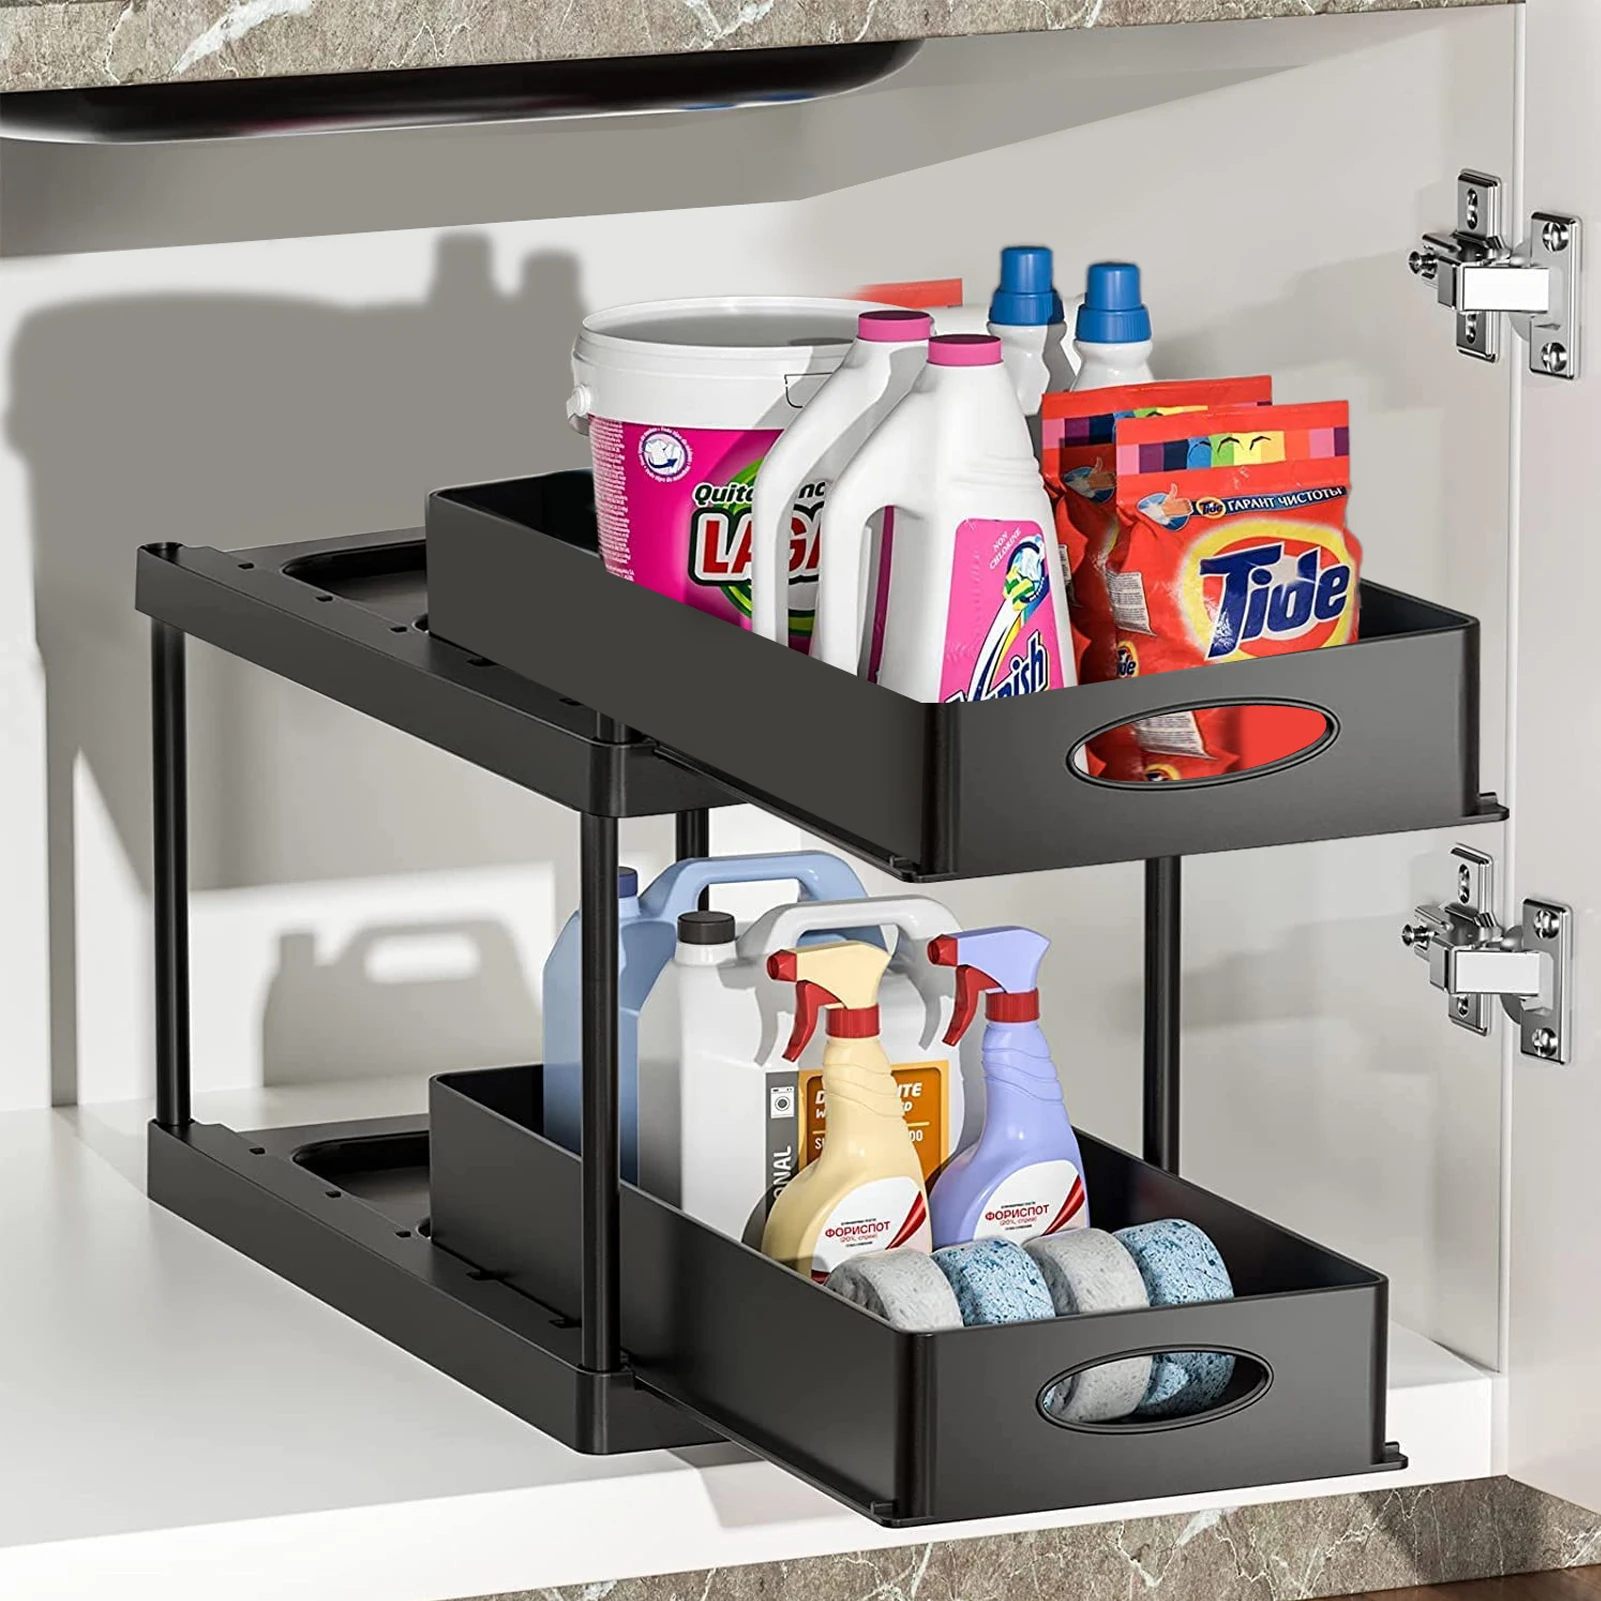 

Under Sink Storage Rack Organizer 2 Tiers Sliding Basket Cabinet Countertop Pull Out Spice Drawer Bathroom Shelf Kitchen Cabinet